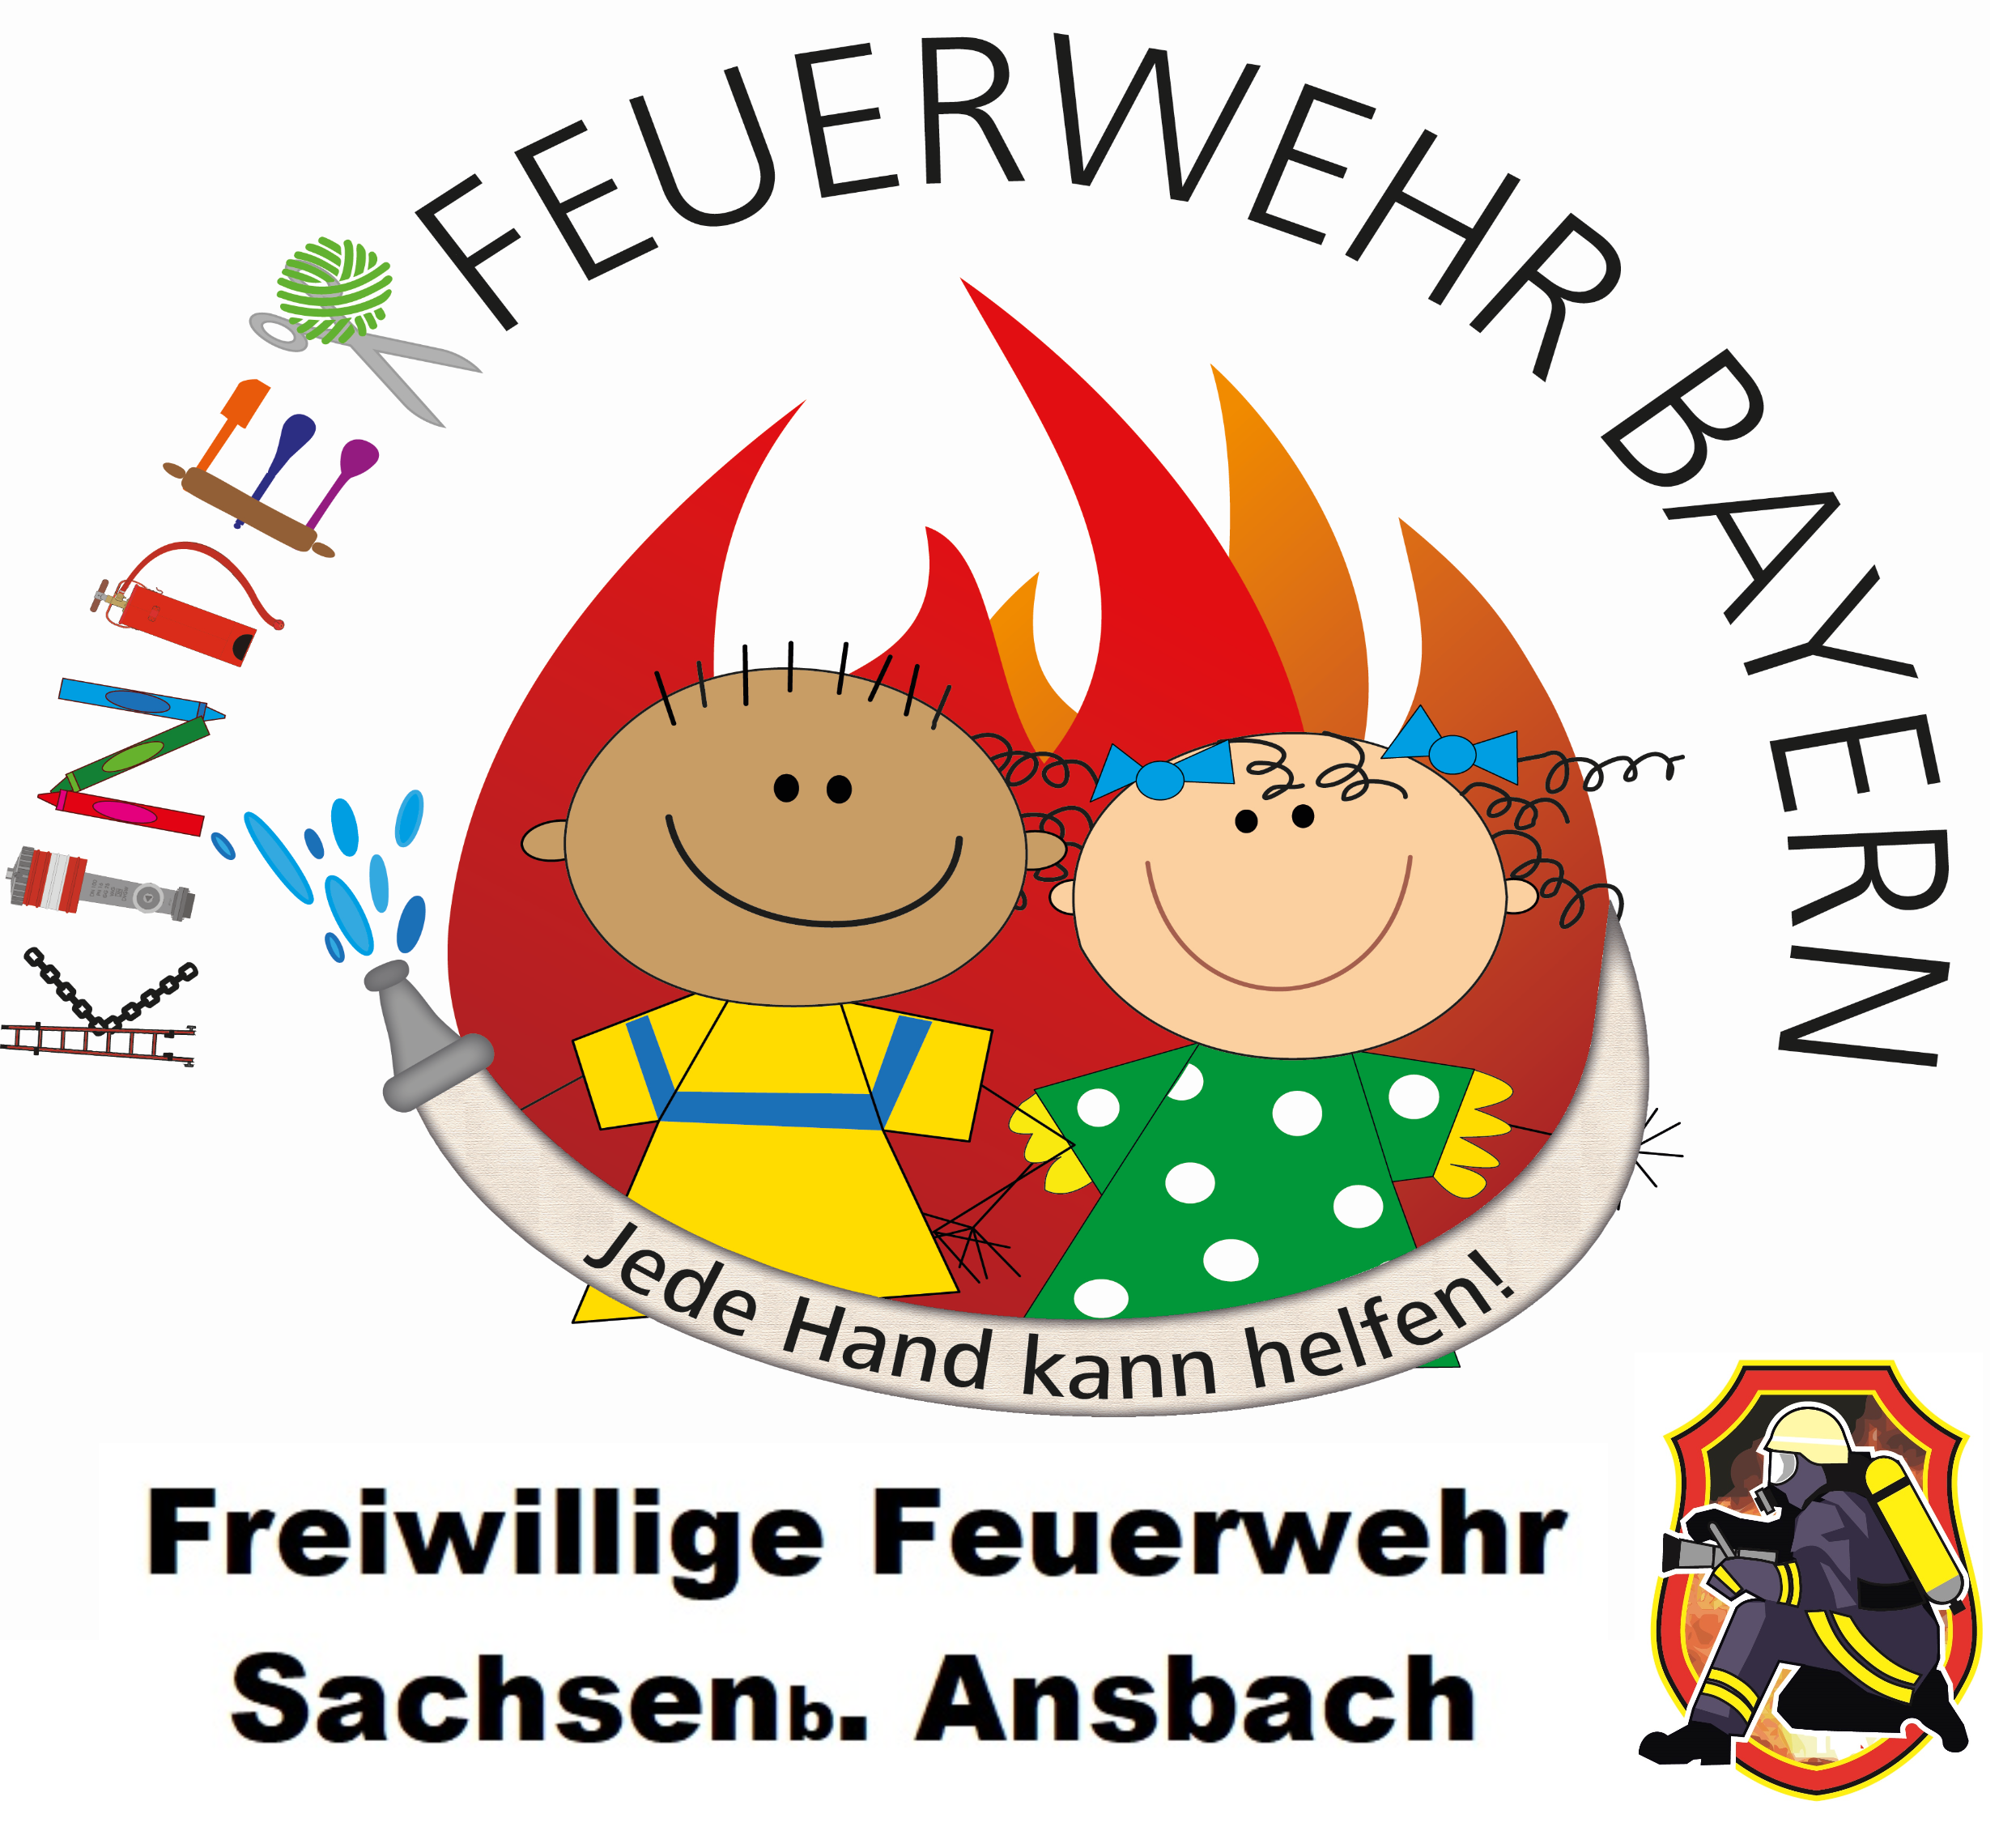 Freiwillige Feuerwehr Sachsen b. Ansbach